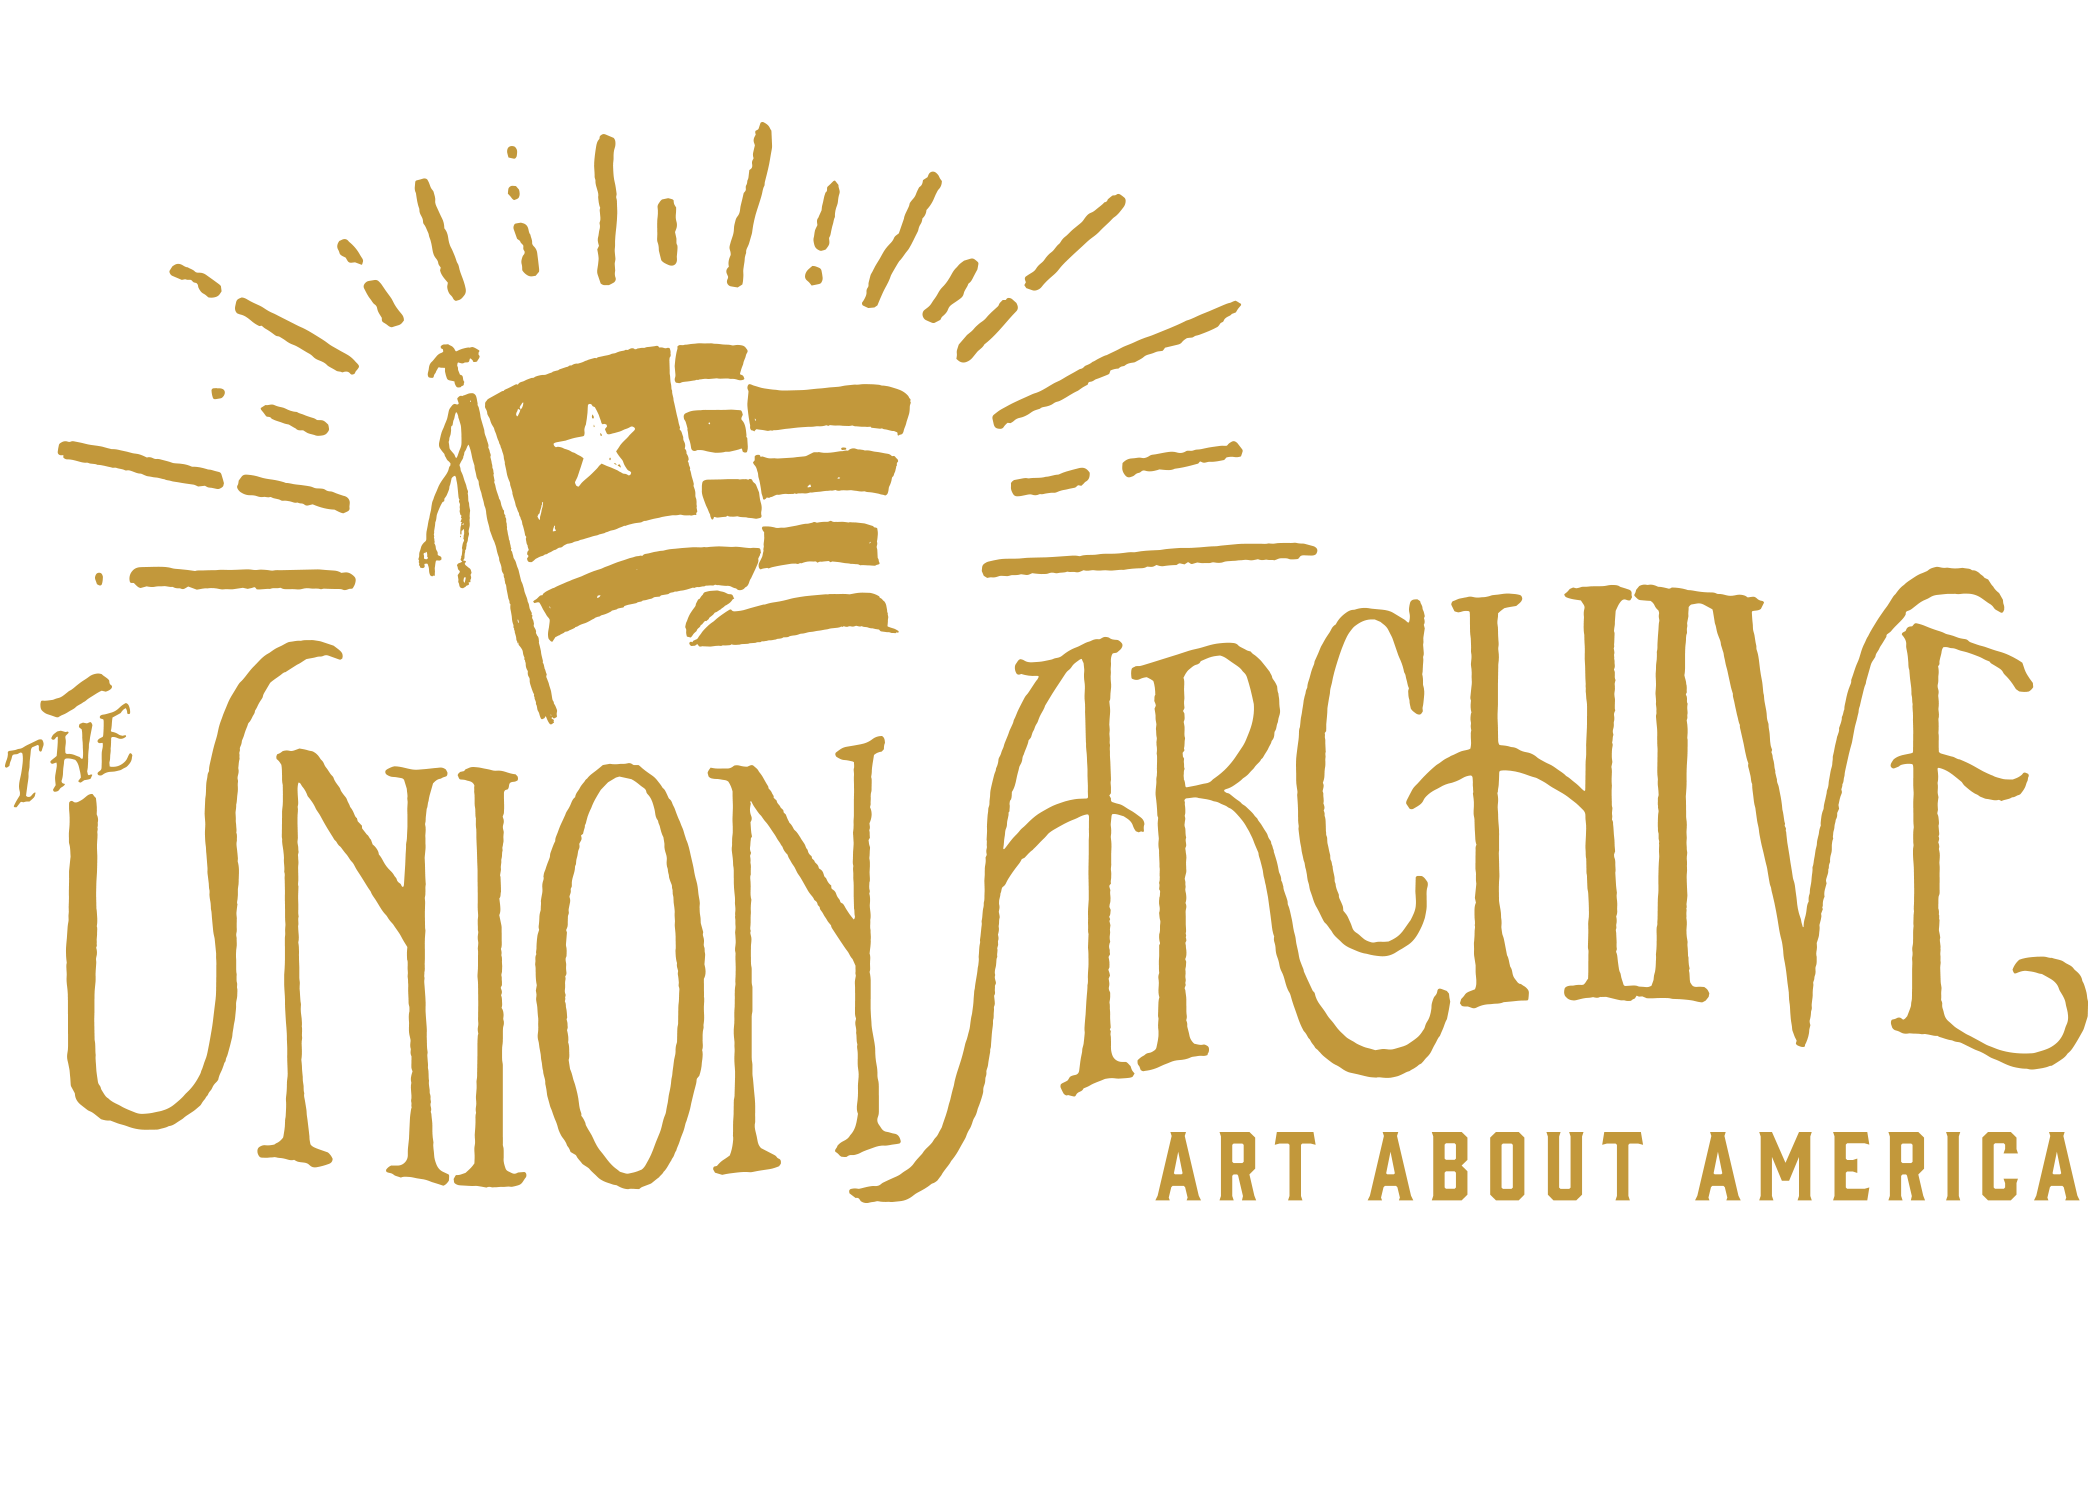 The Union Archive